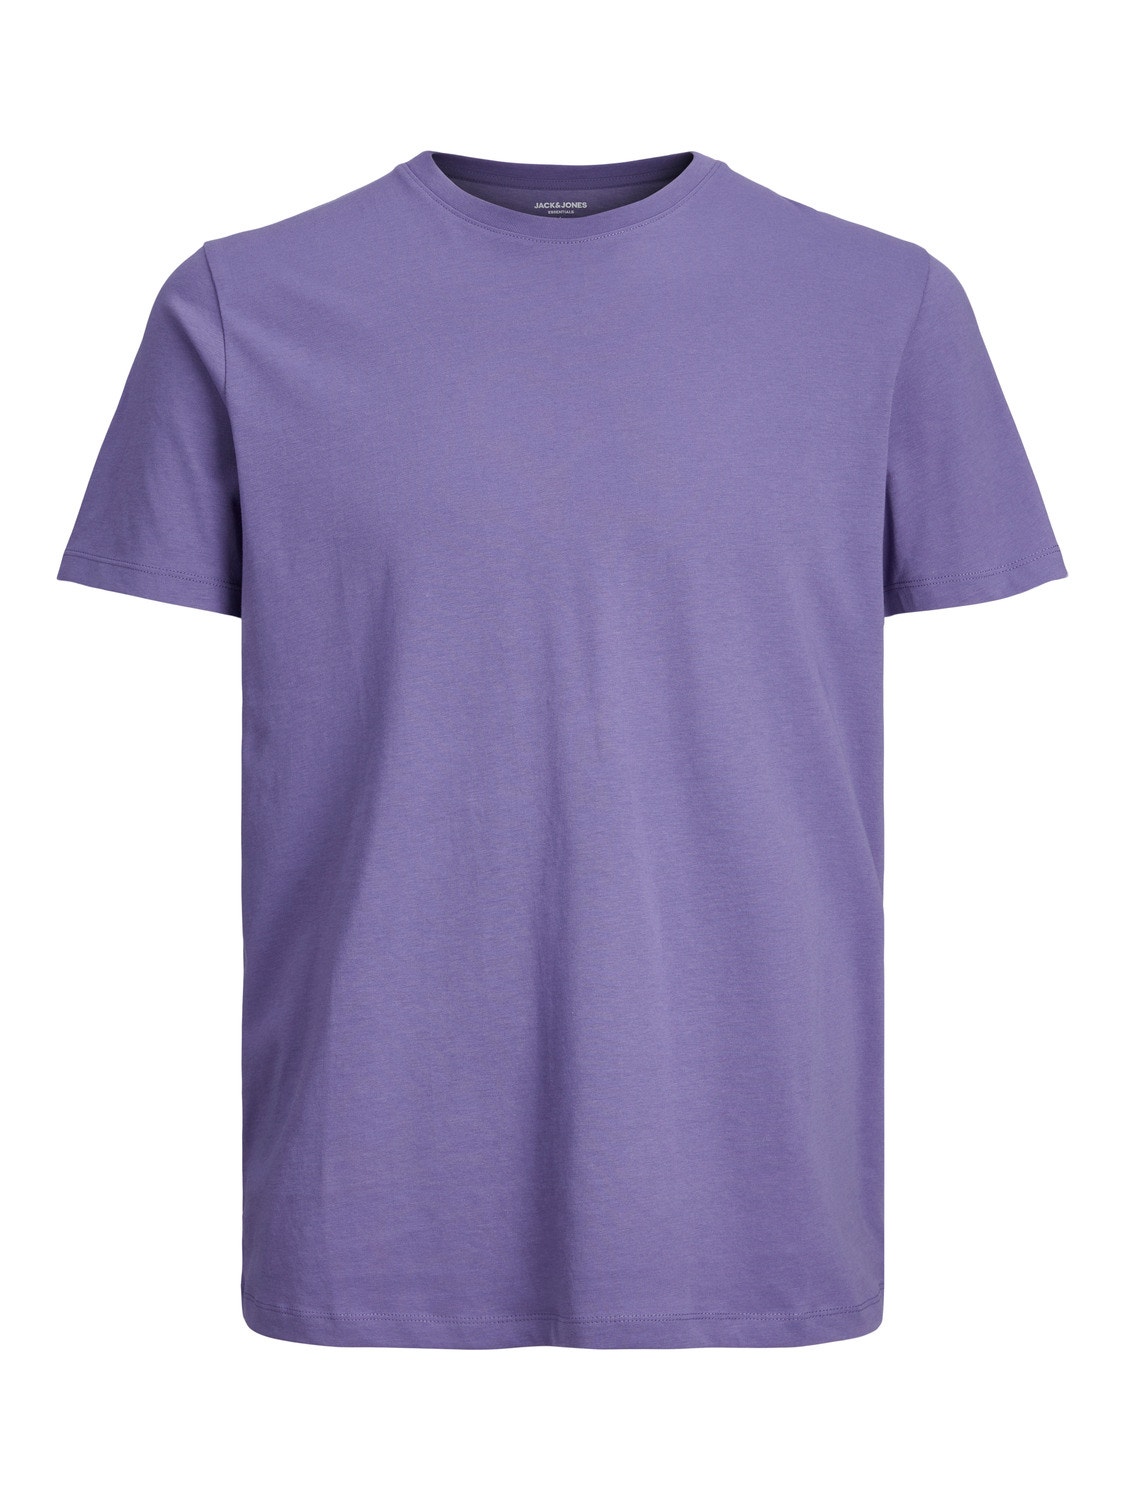 Jack & Jones Plain O-Neck T-shirt -Twilight Purple - 12156101